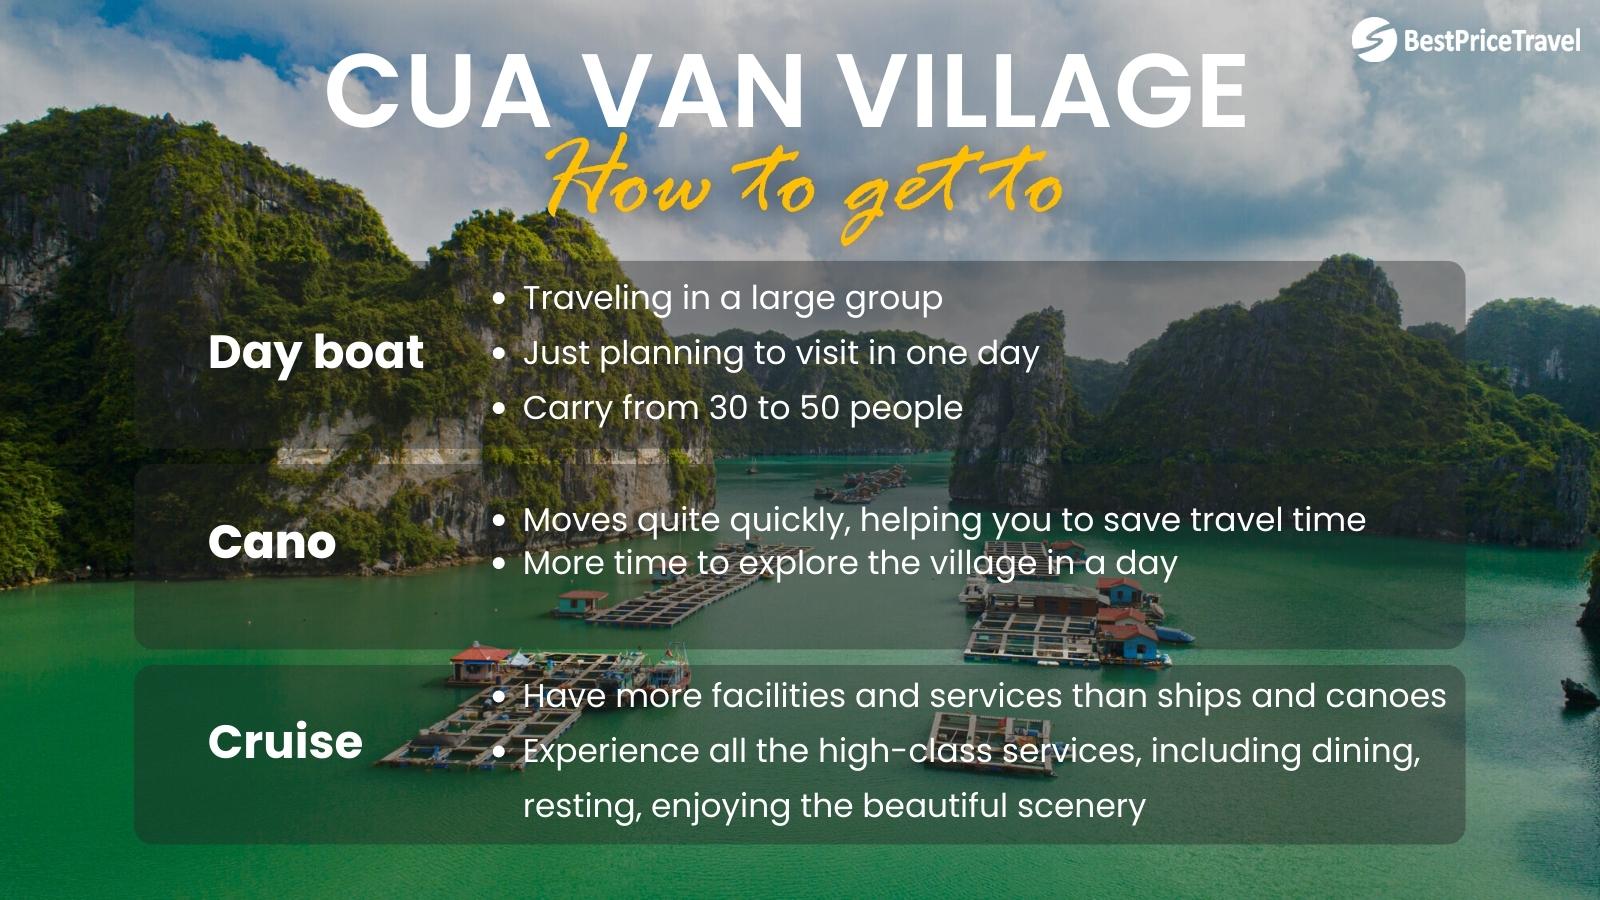 How to get to Cua Van Village